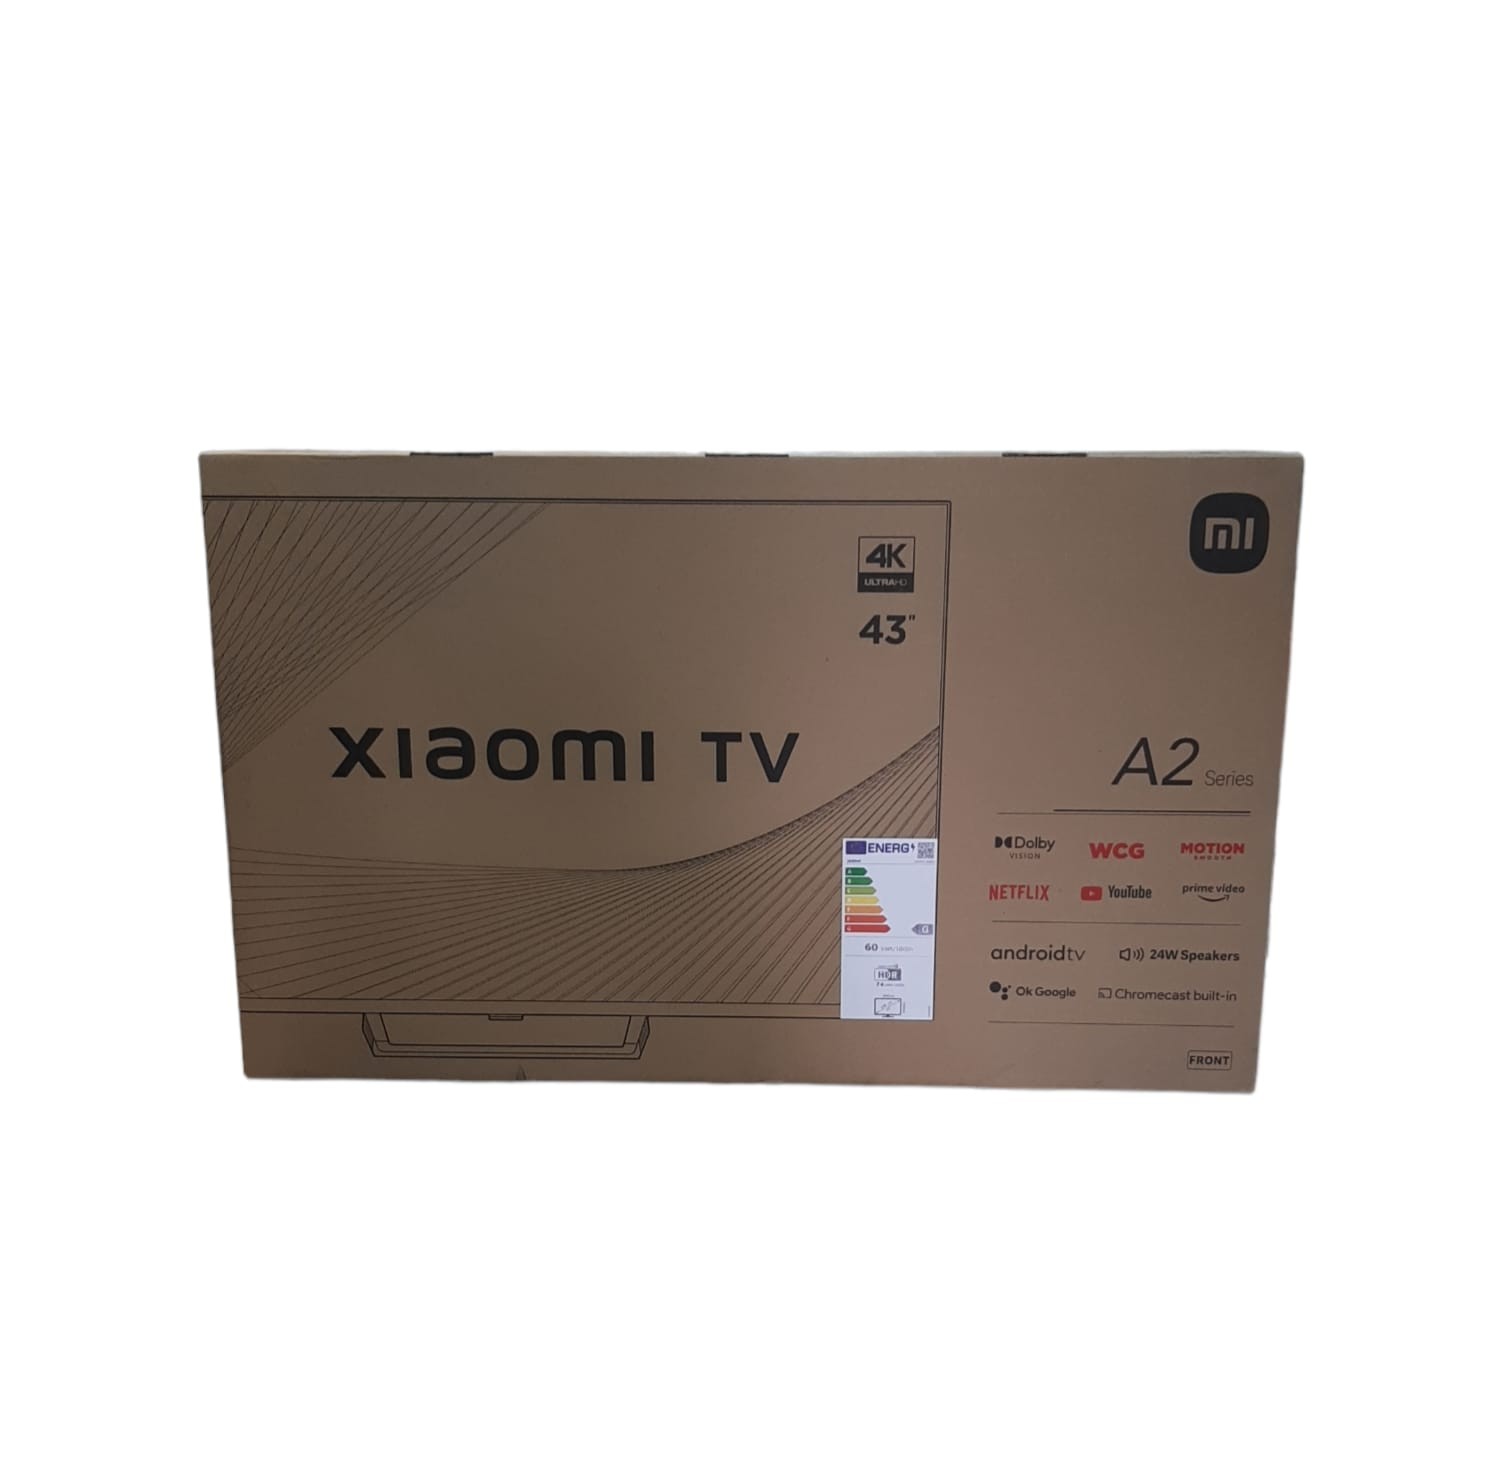 Xiaomi TV A2 43 pulgadas - Xiaomi España